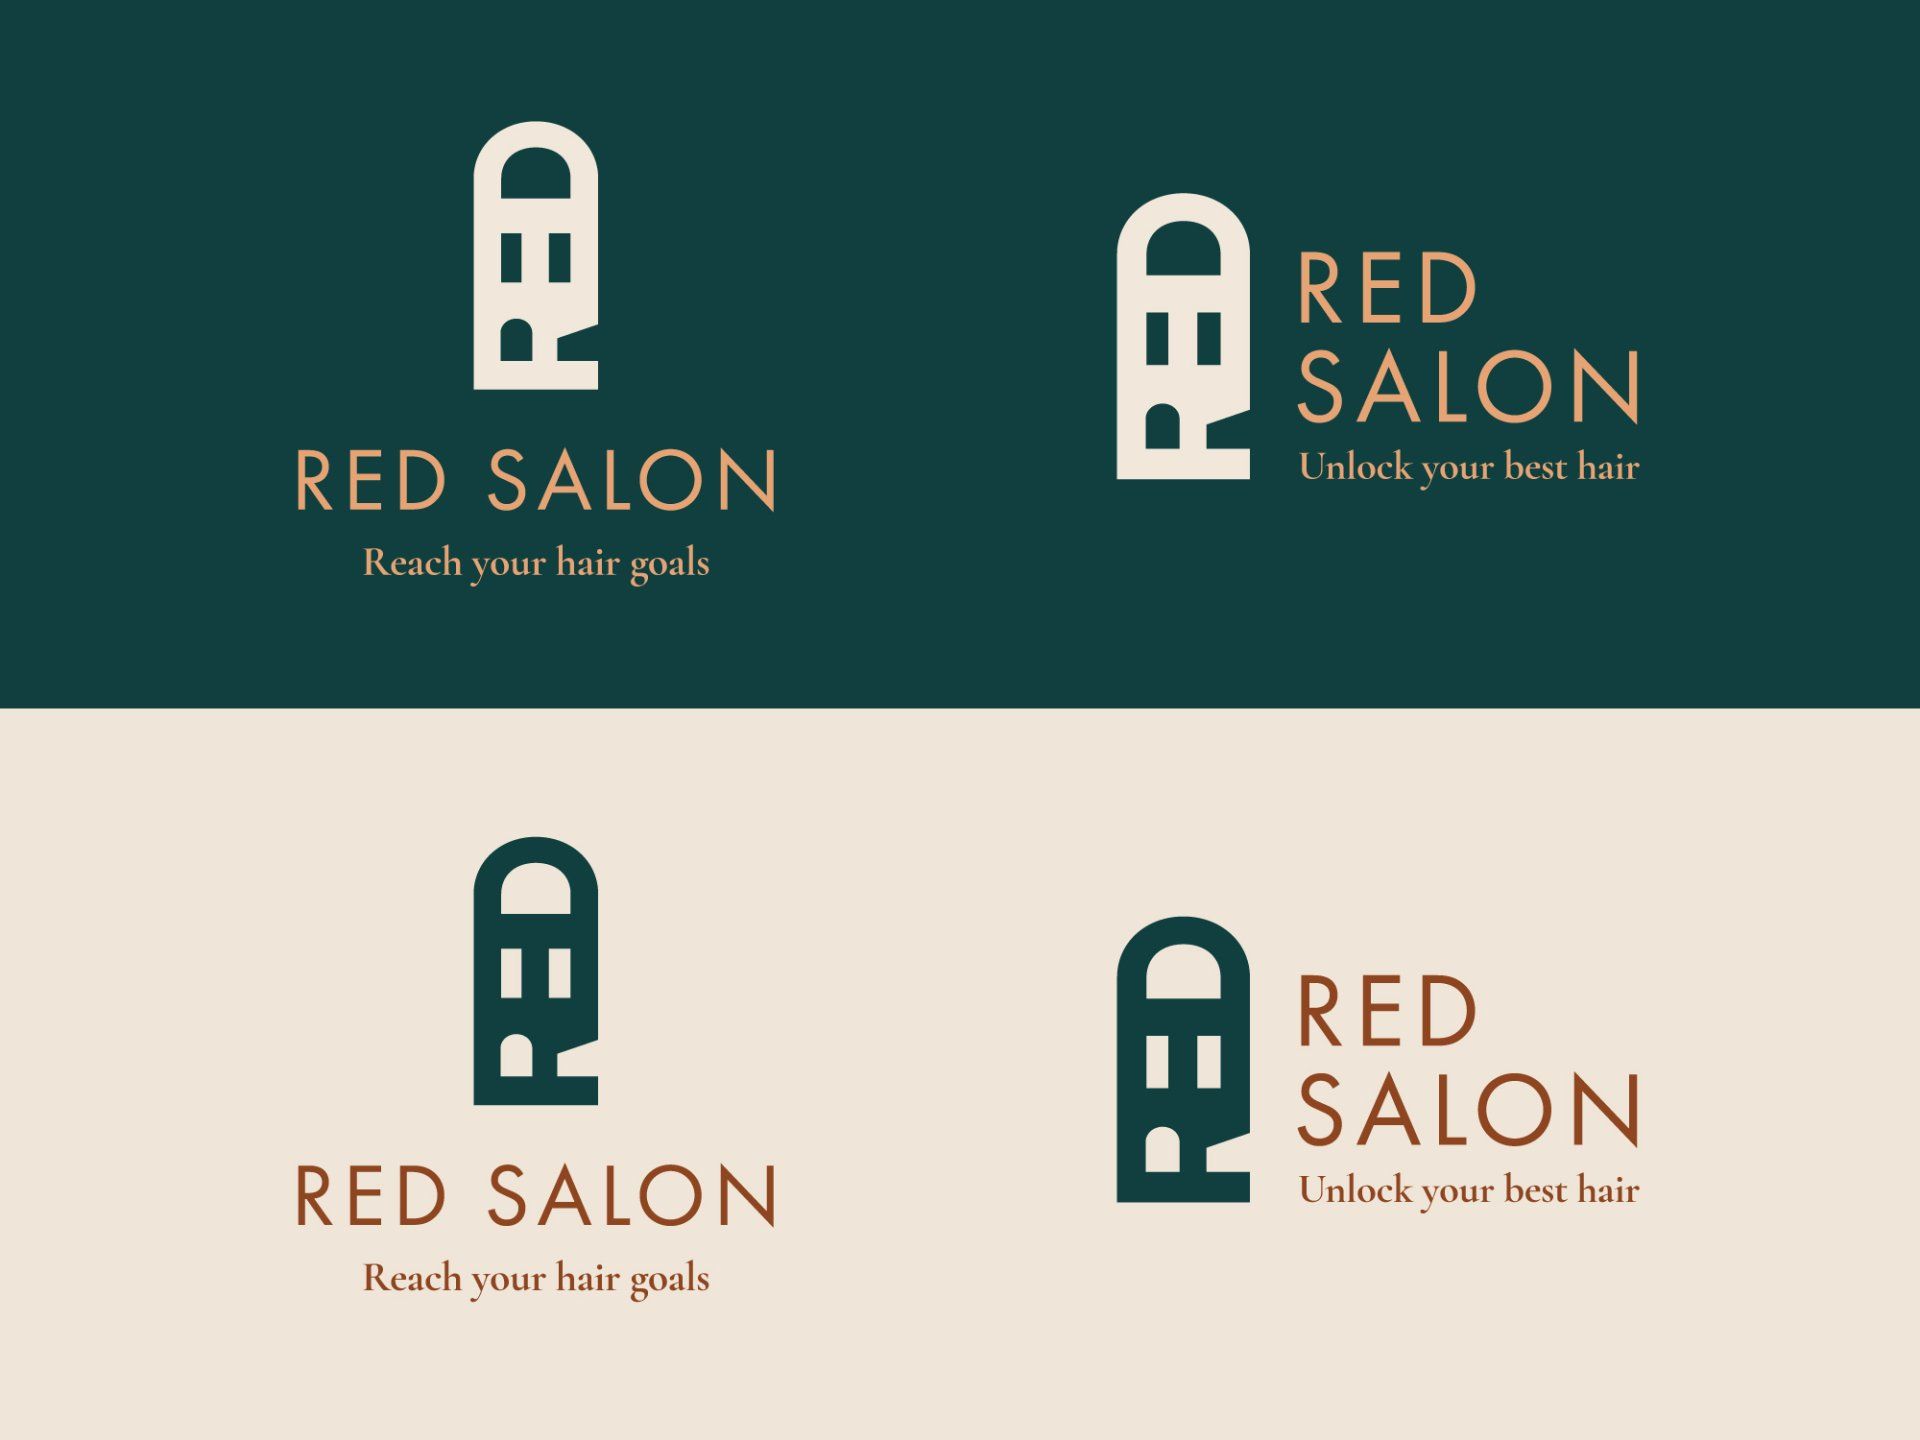 Red Salon logo variations